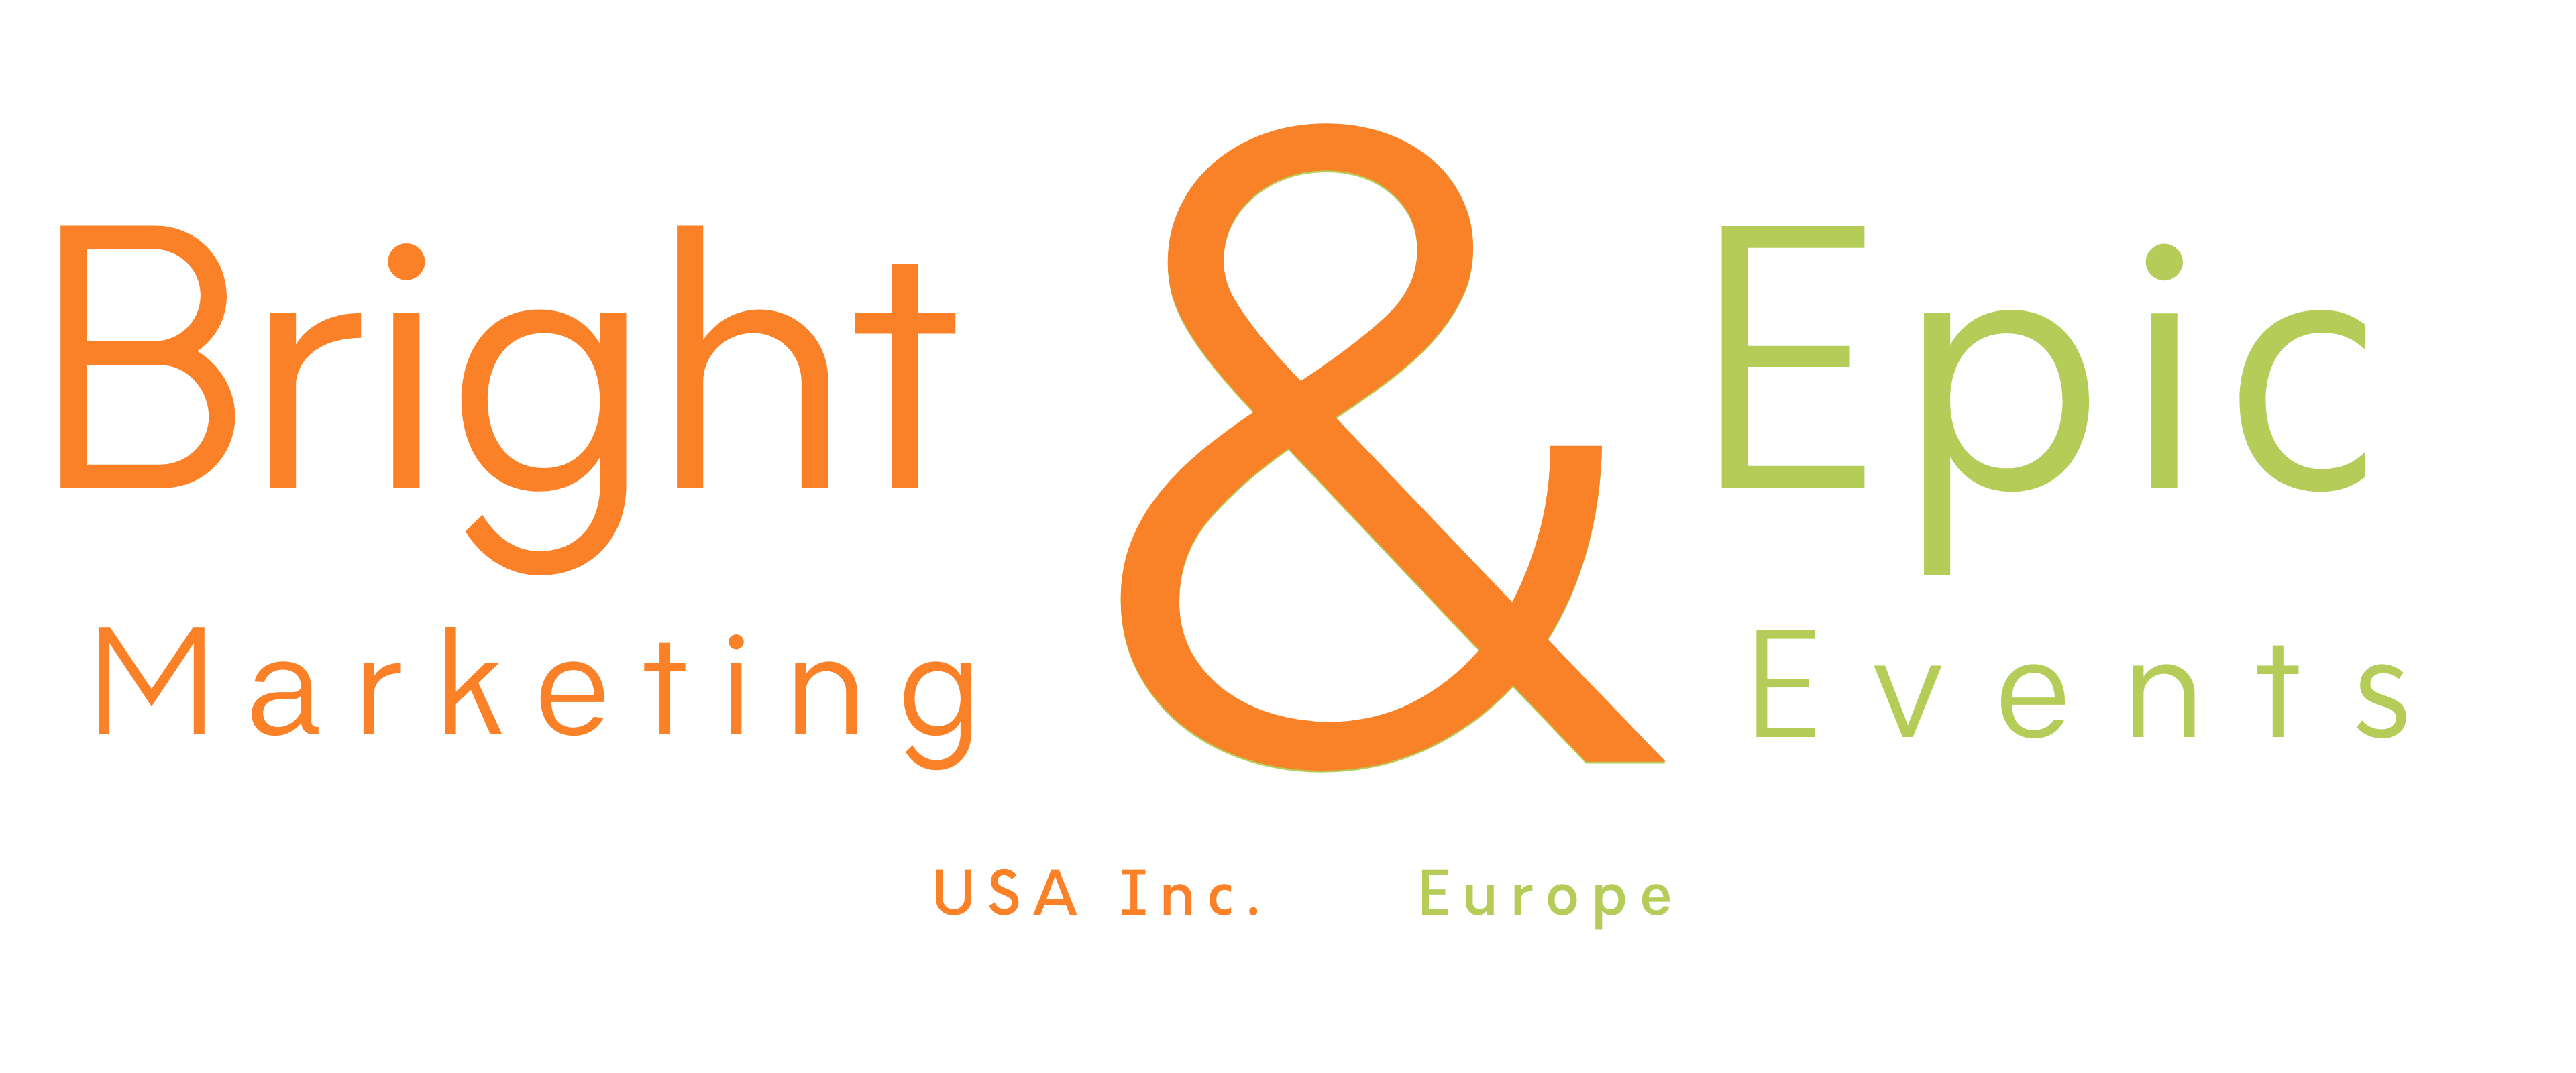 Bright & Epic Events Marketing Europe USA - Merge Logo